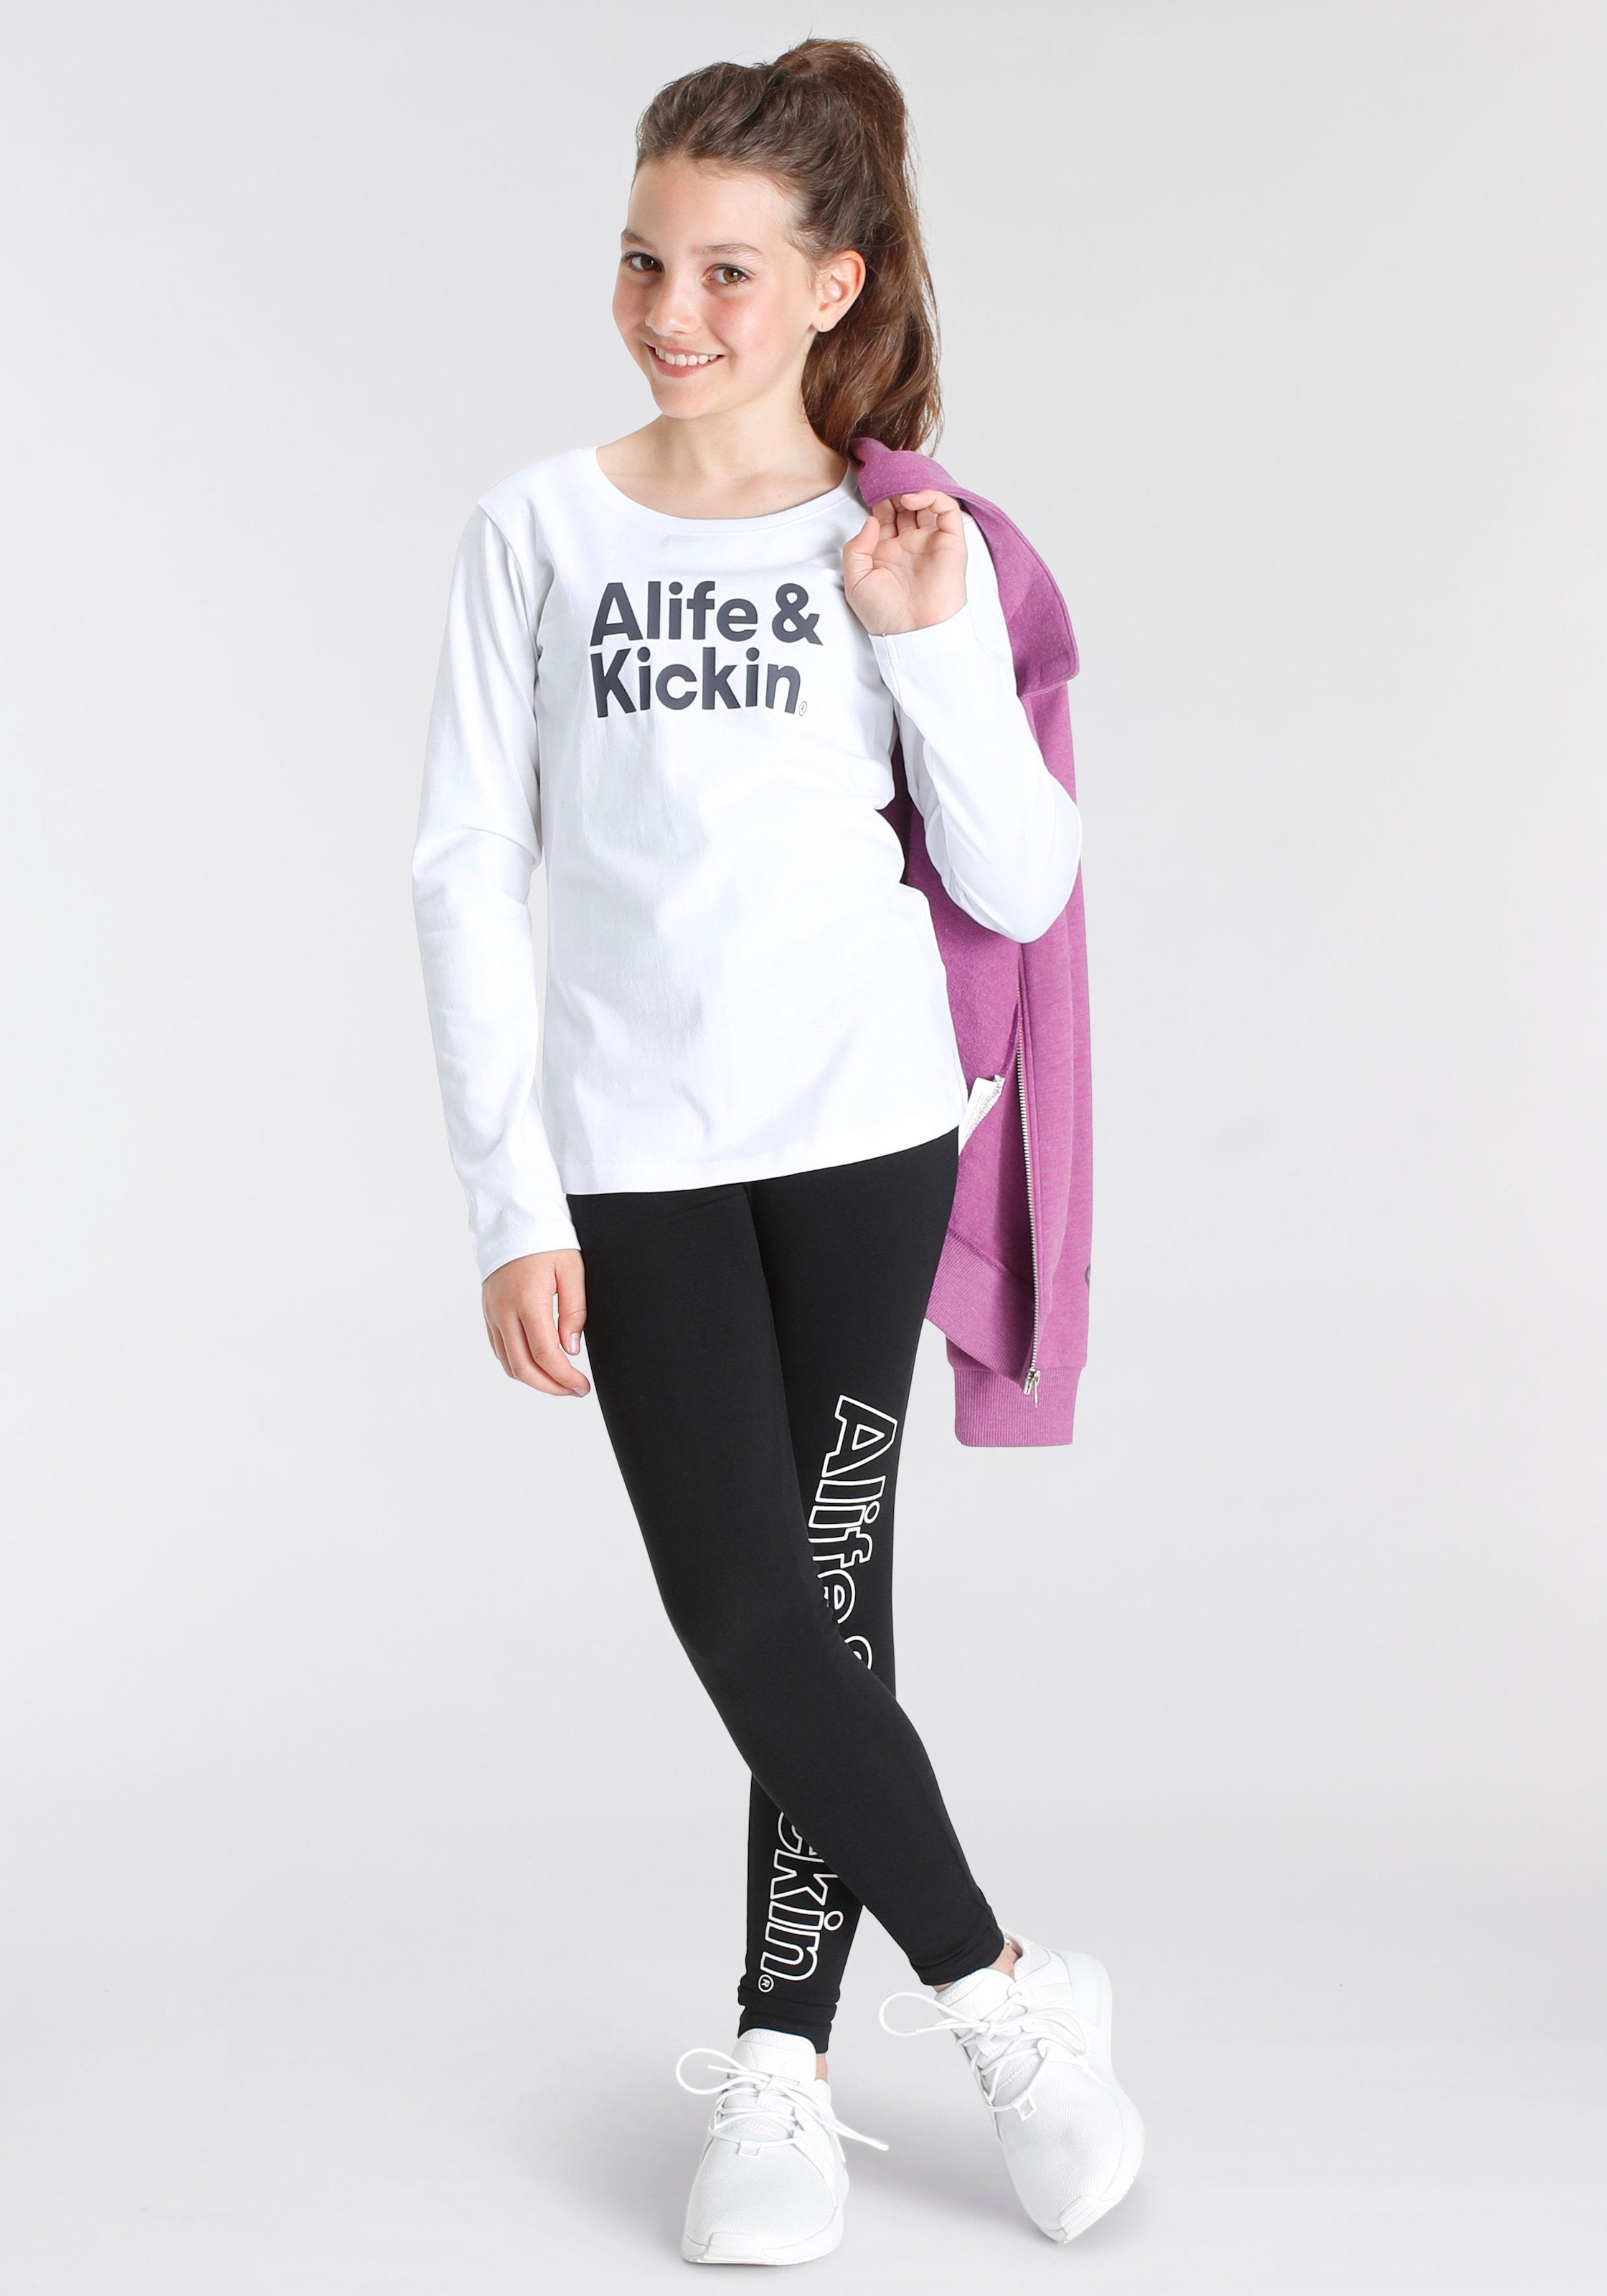 Alife & Alife hohem »mit Kickin & MARKE! NEUE Kickin | Stehkragen«, bestellen Sweatjacke online für BAUR Kids